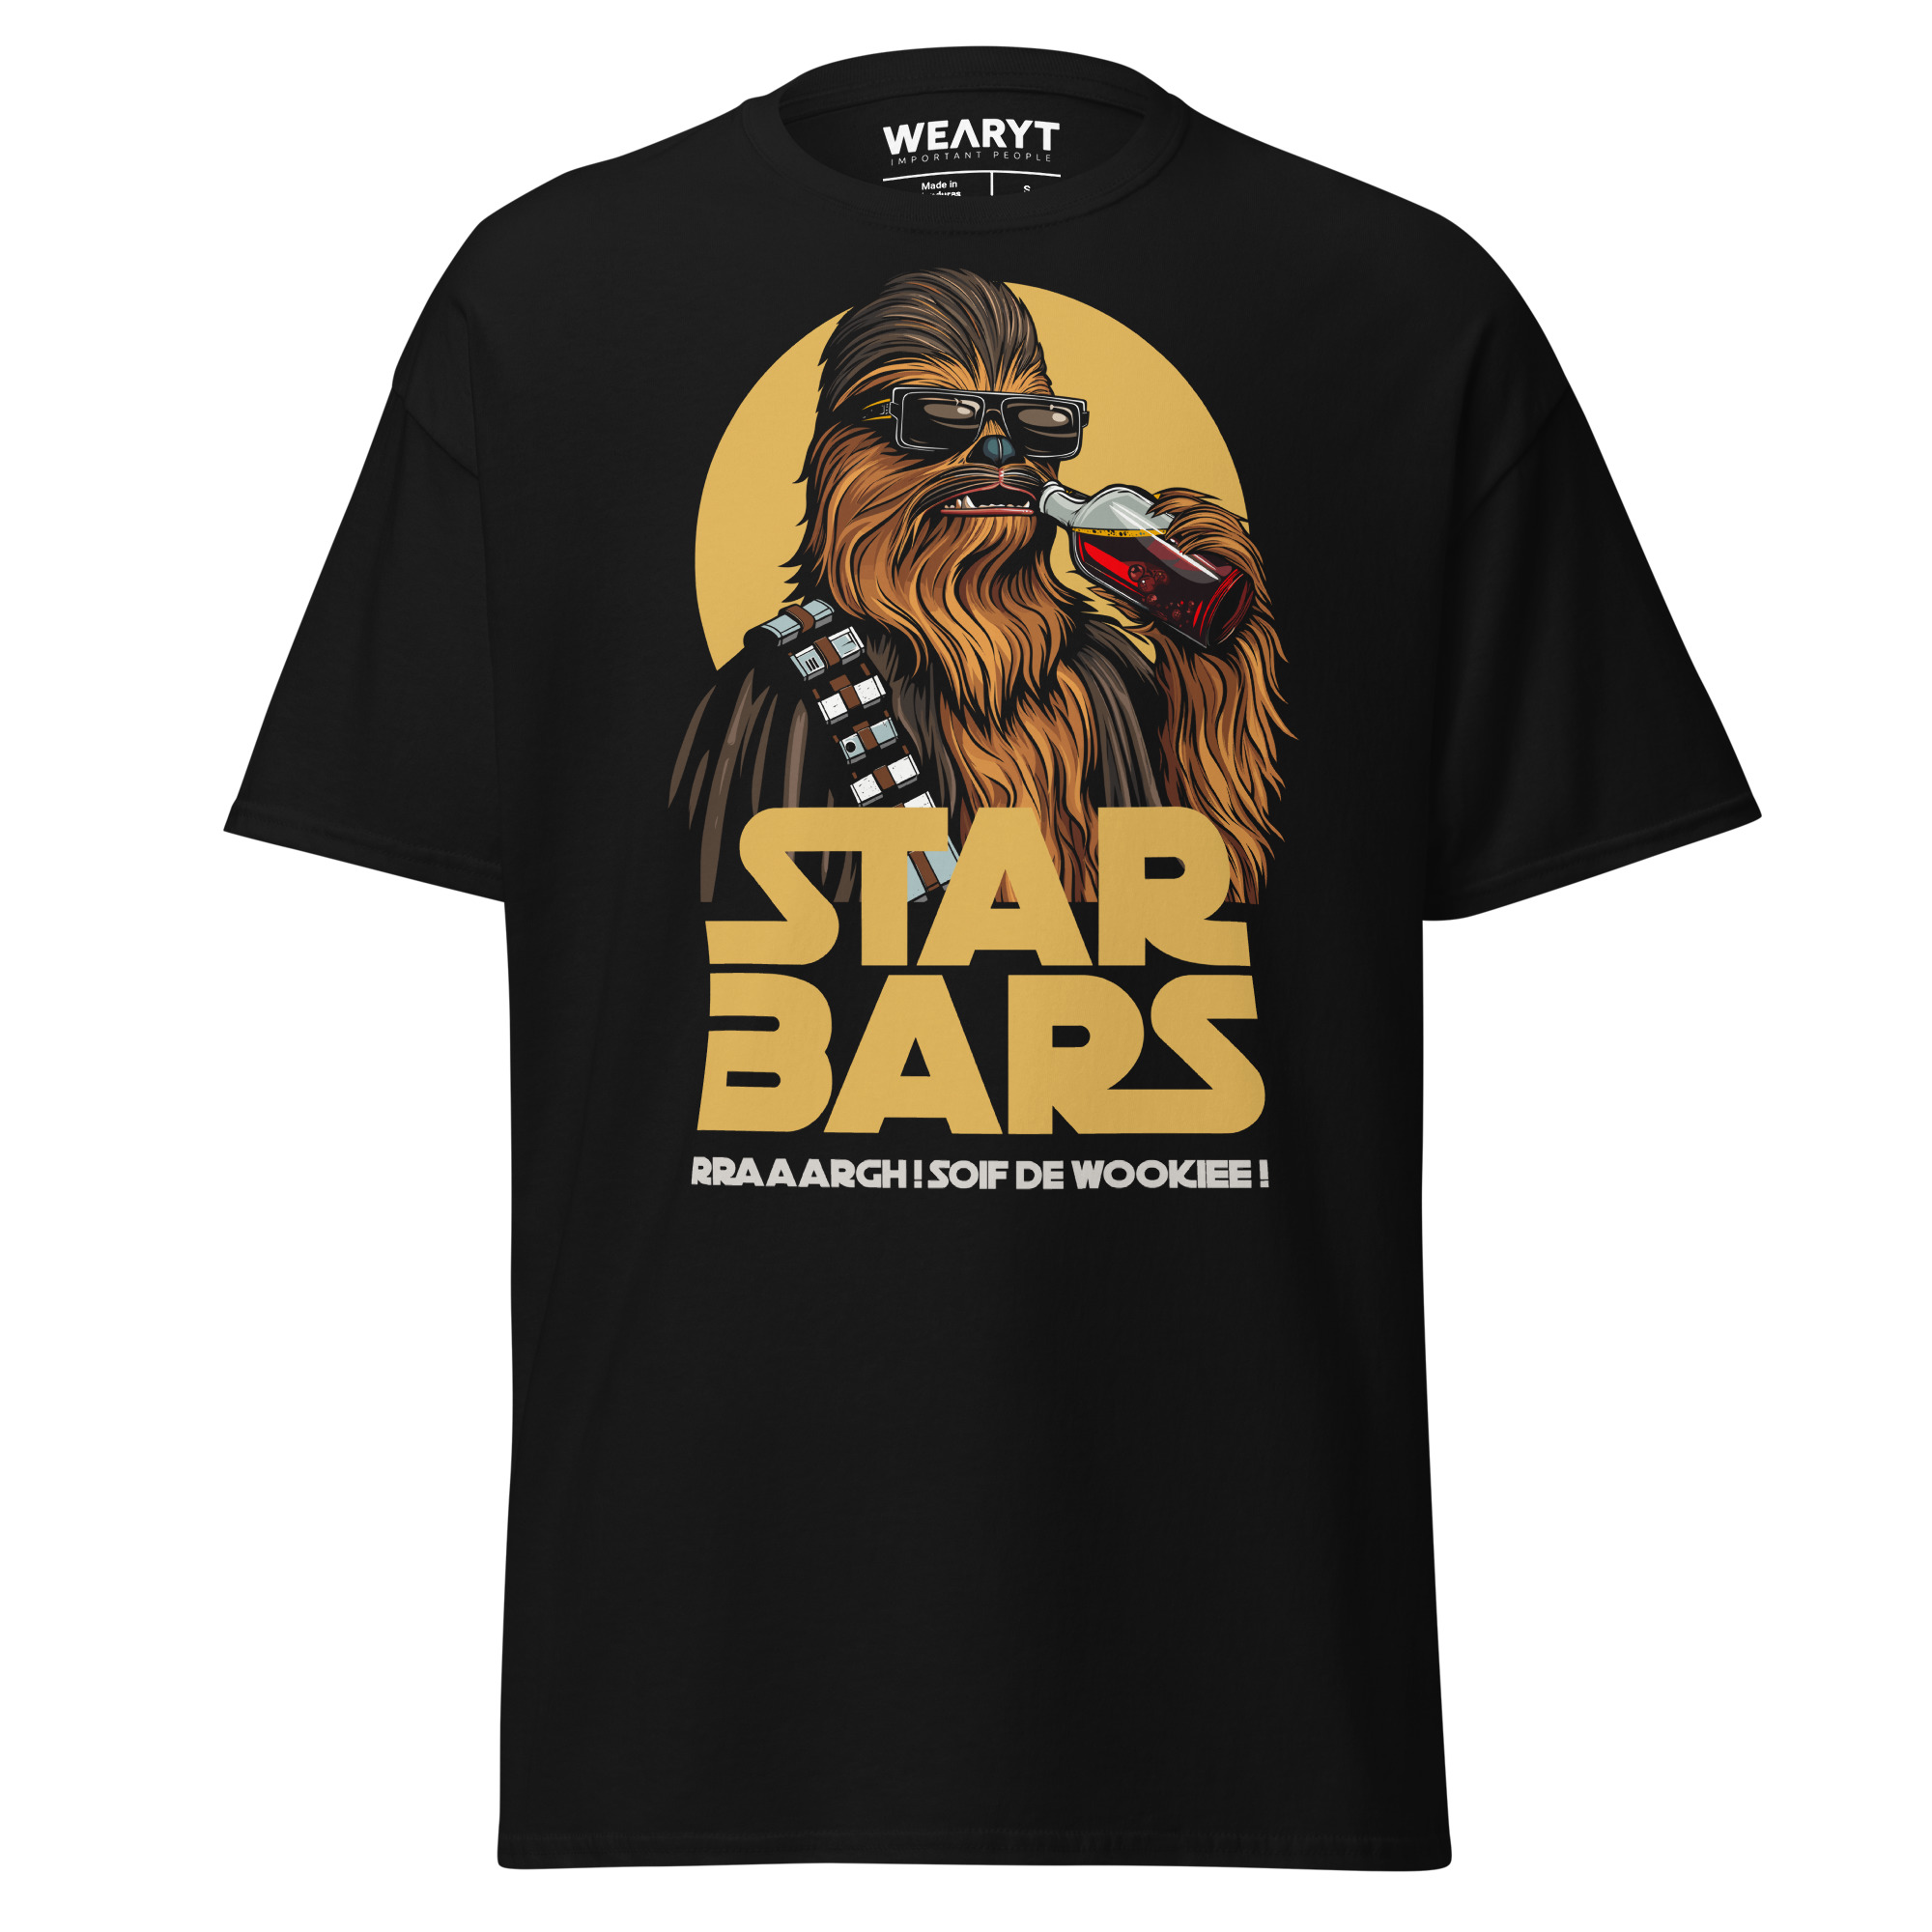 T-shirt – Star Bars – Rraaargh! Wookiee thirst! Men's Clothing Wearyt